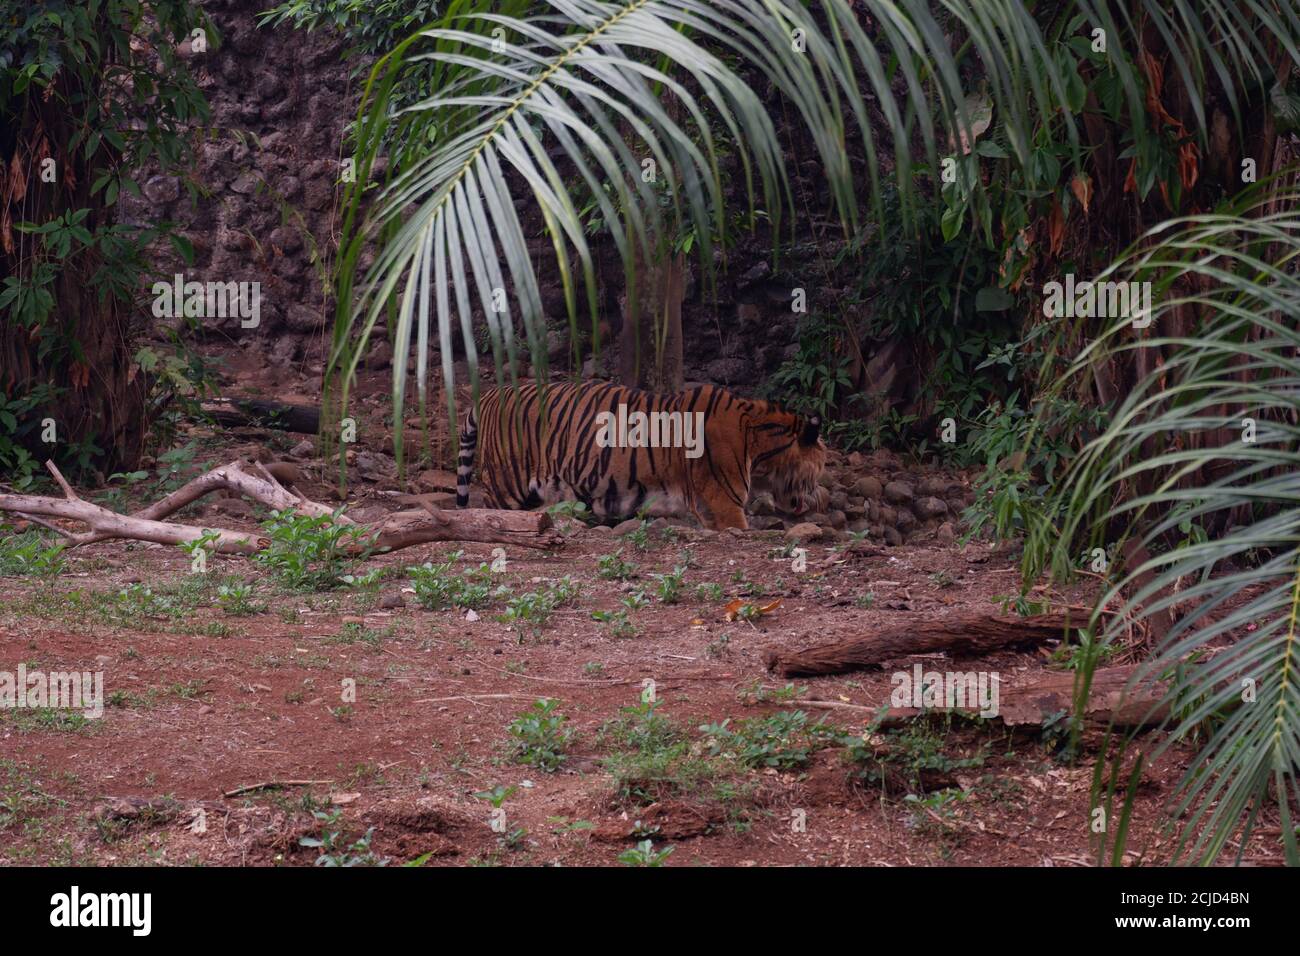 El tigre de Sumatra es una población de Panthera tigris sondaica en la isla Indonesia de Sumatra. Esta población fue catalogada como críticamente Endangere Foto de stock